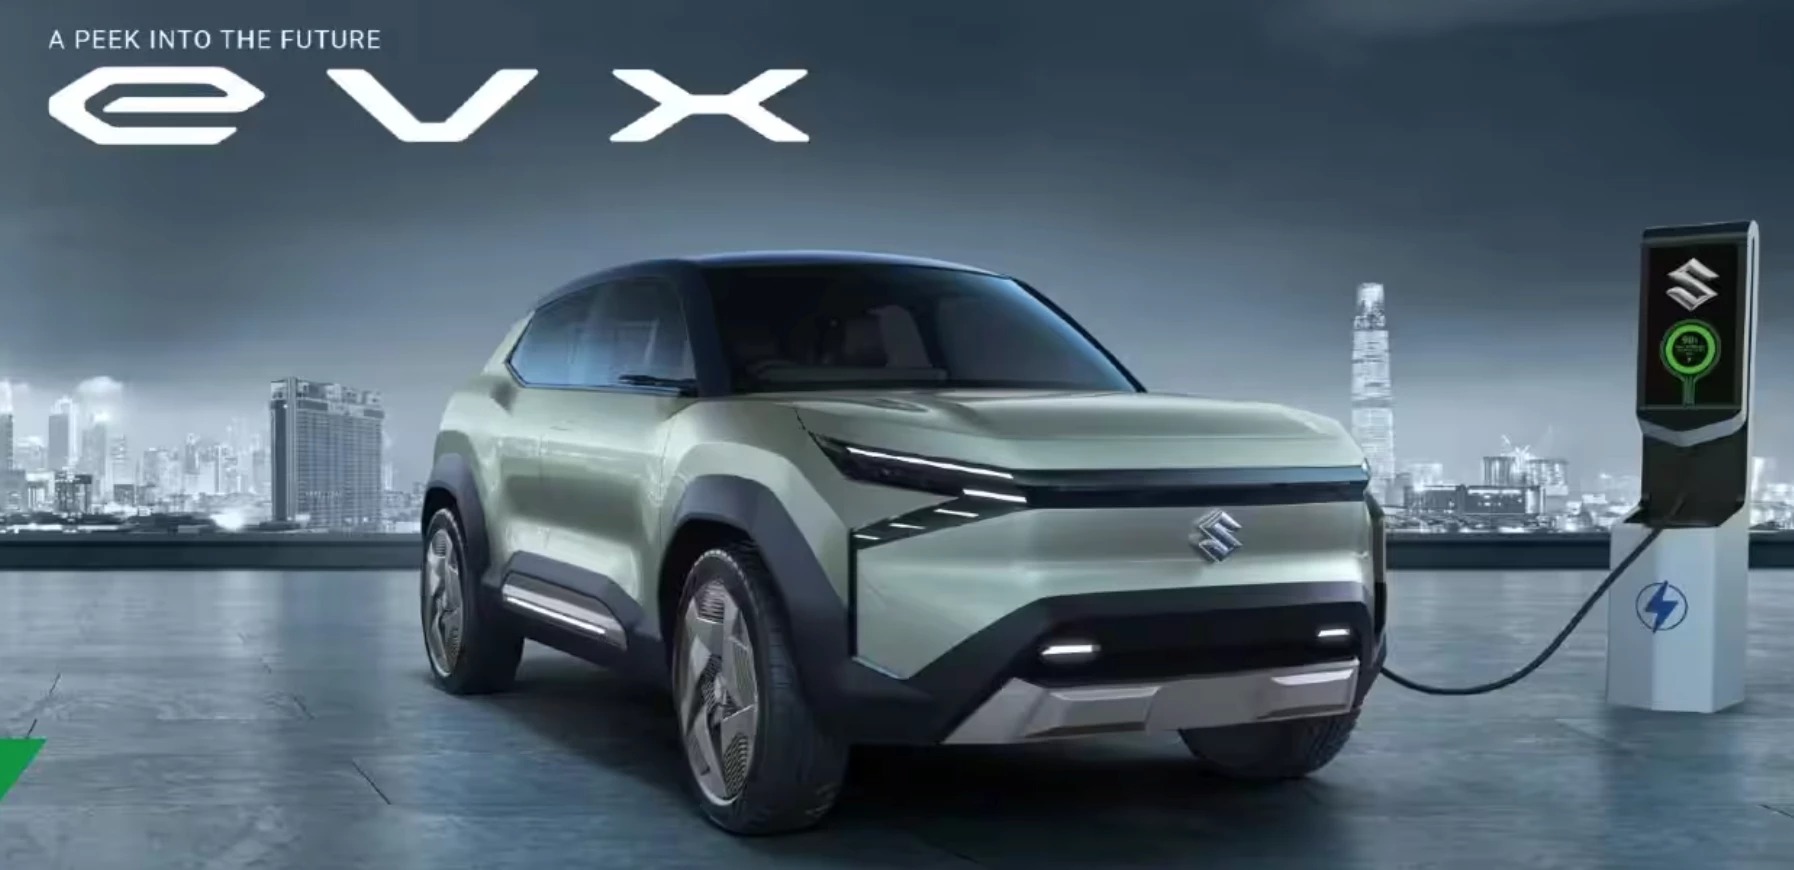 Dự đoán thiết kế SUV điện sắp được Suzuki ra mắt - Ảnh 1.